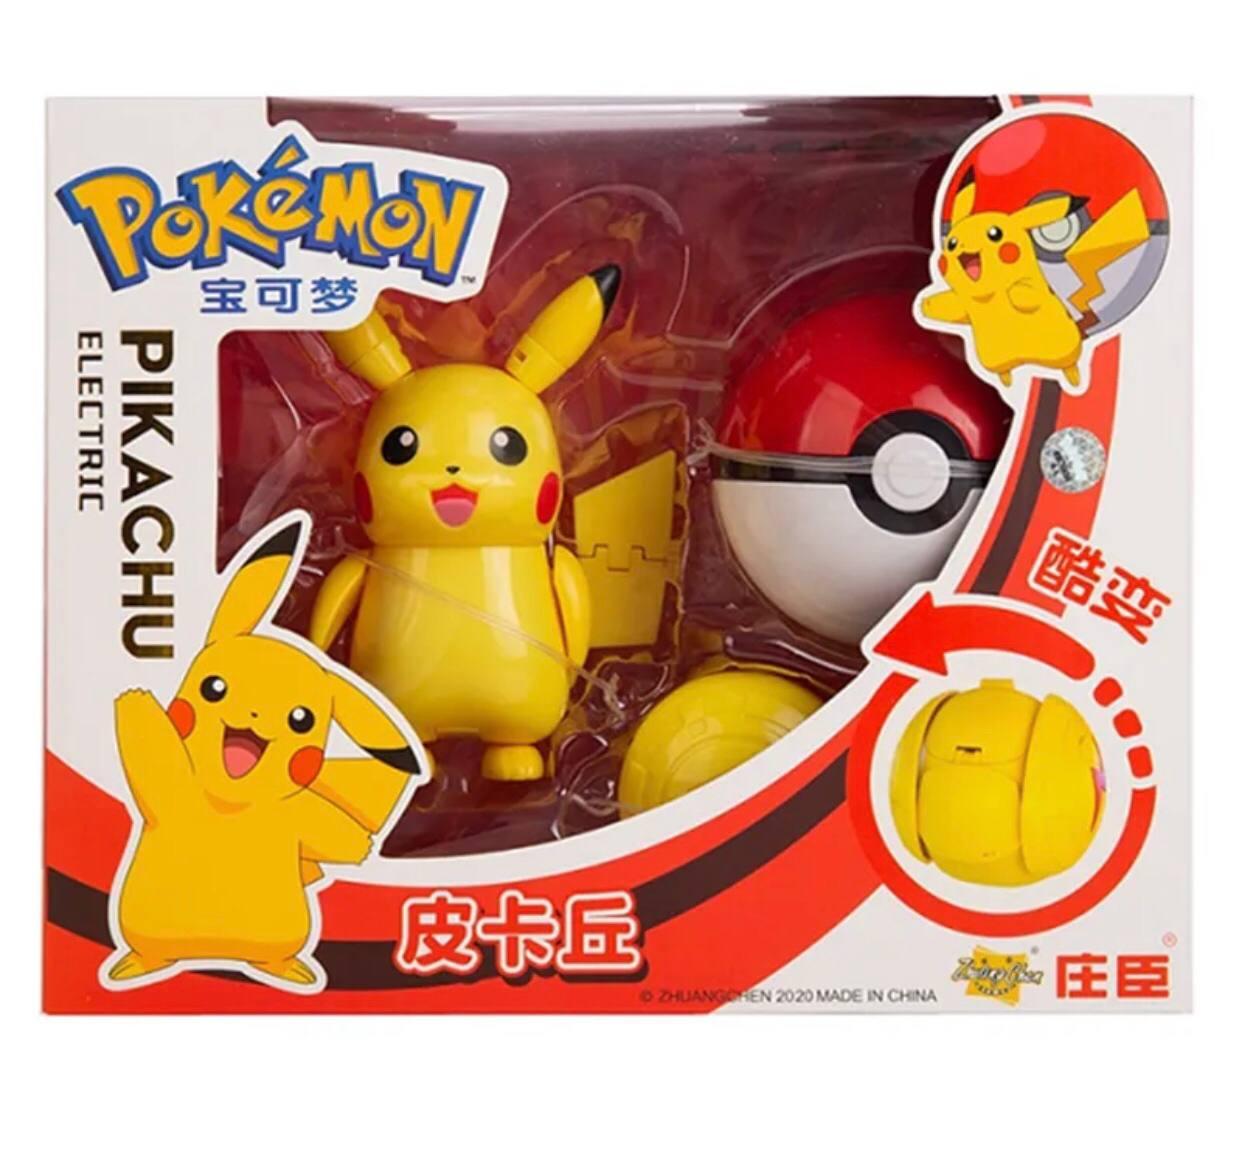 Іграшка Пакемон Пікачу для дітей з пакетболом жовта, куля з фігуркою-трансформером пікачу для дітей